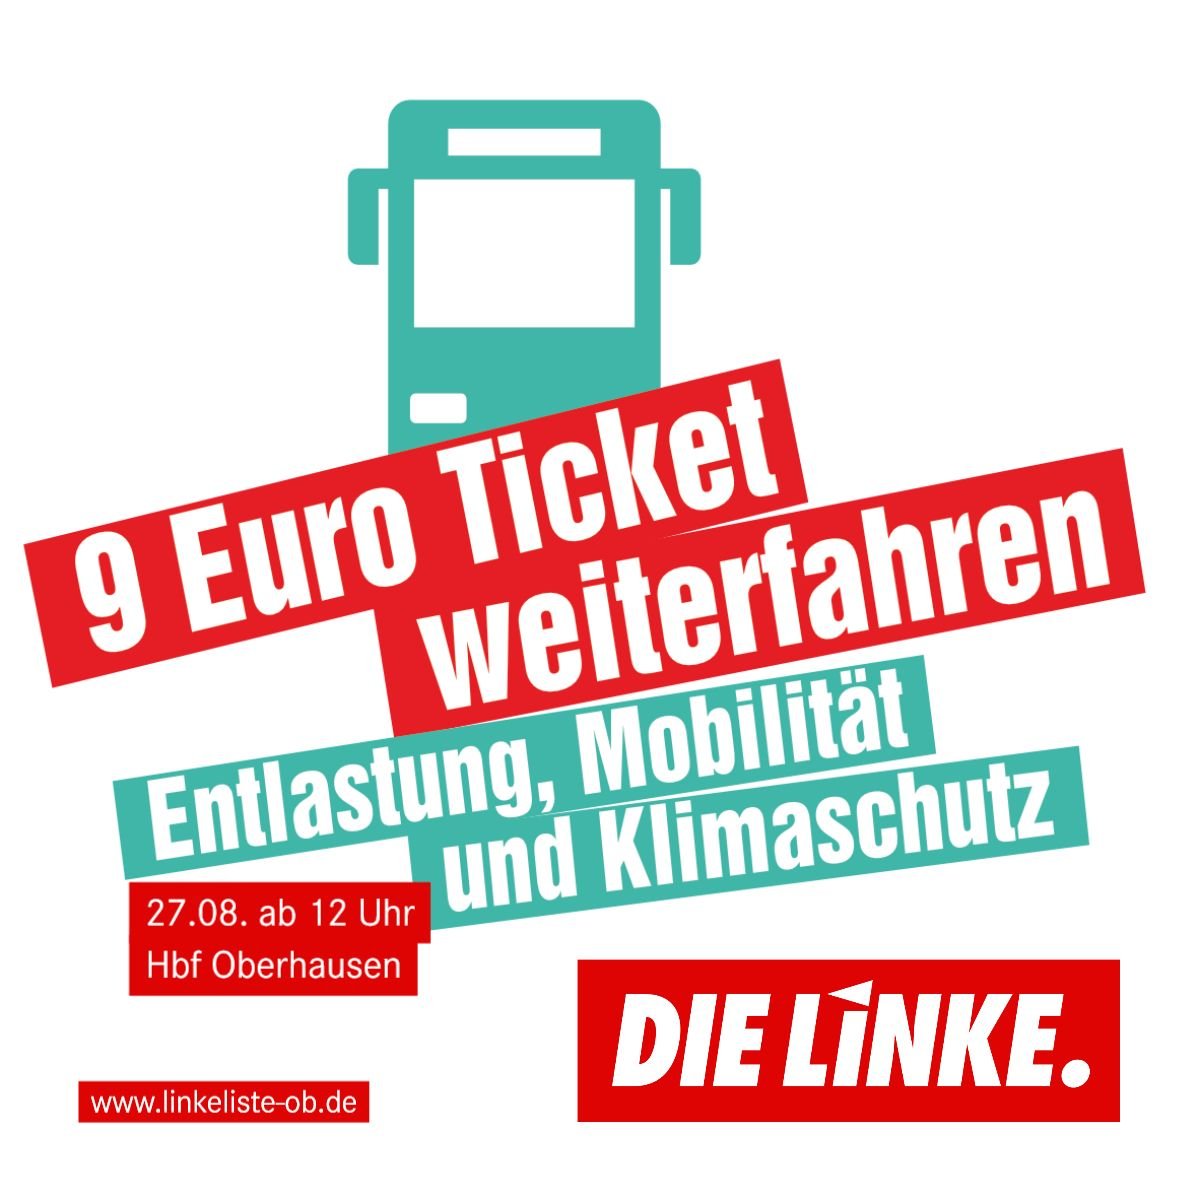 27.08.: Aktionstag 9-Euro-Ticket weiterfahren in Oberhausen